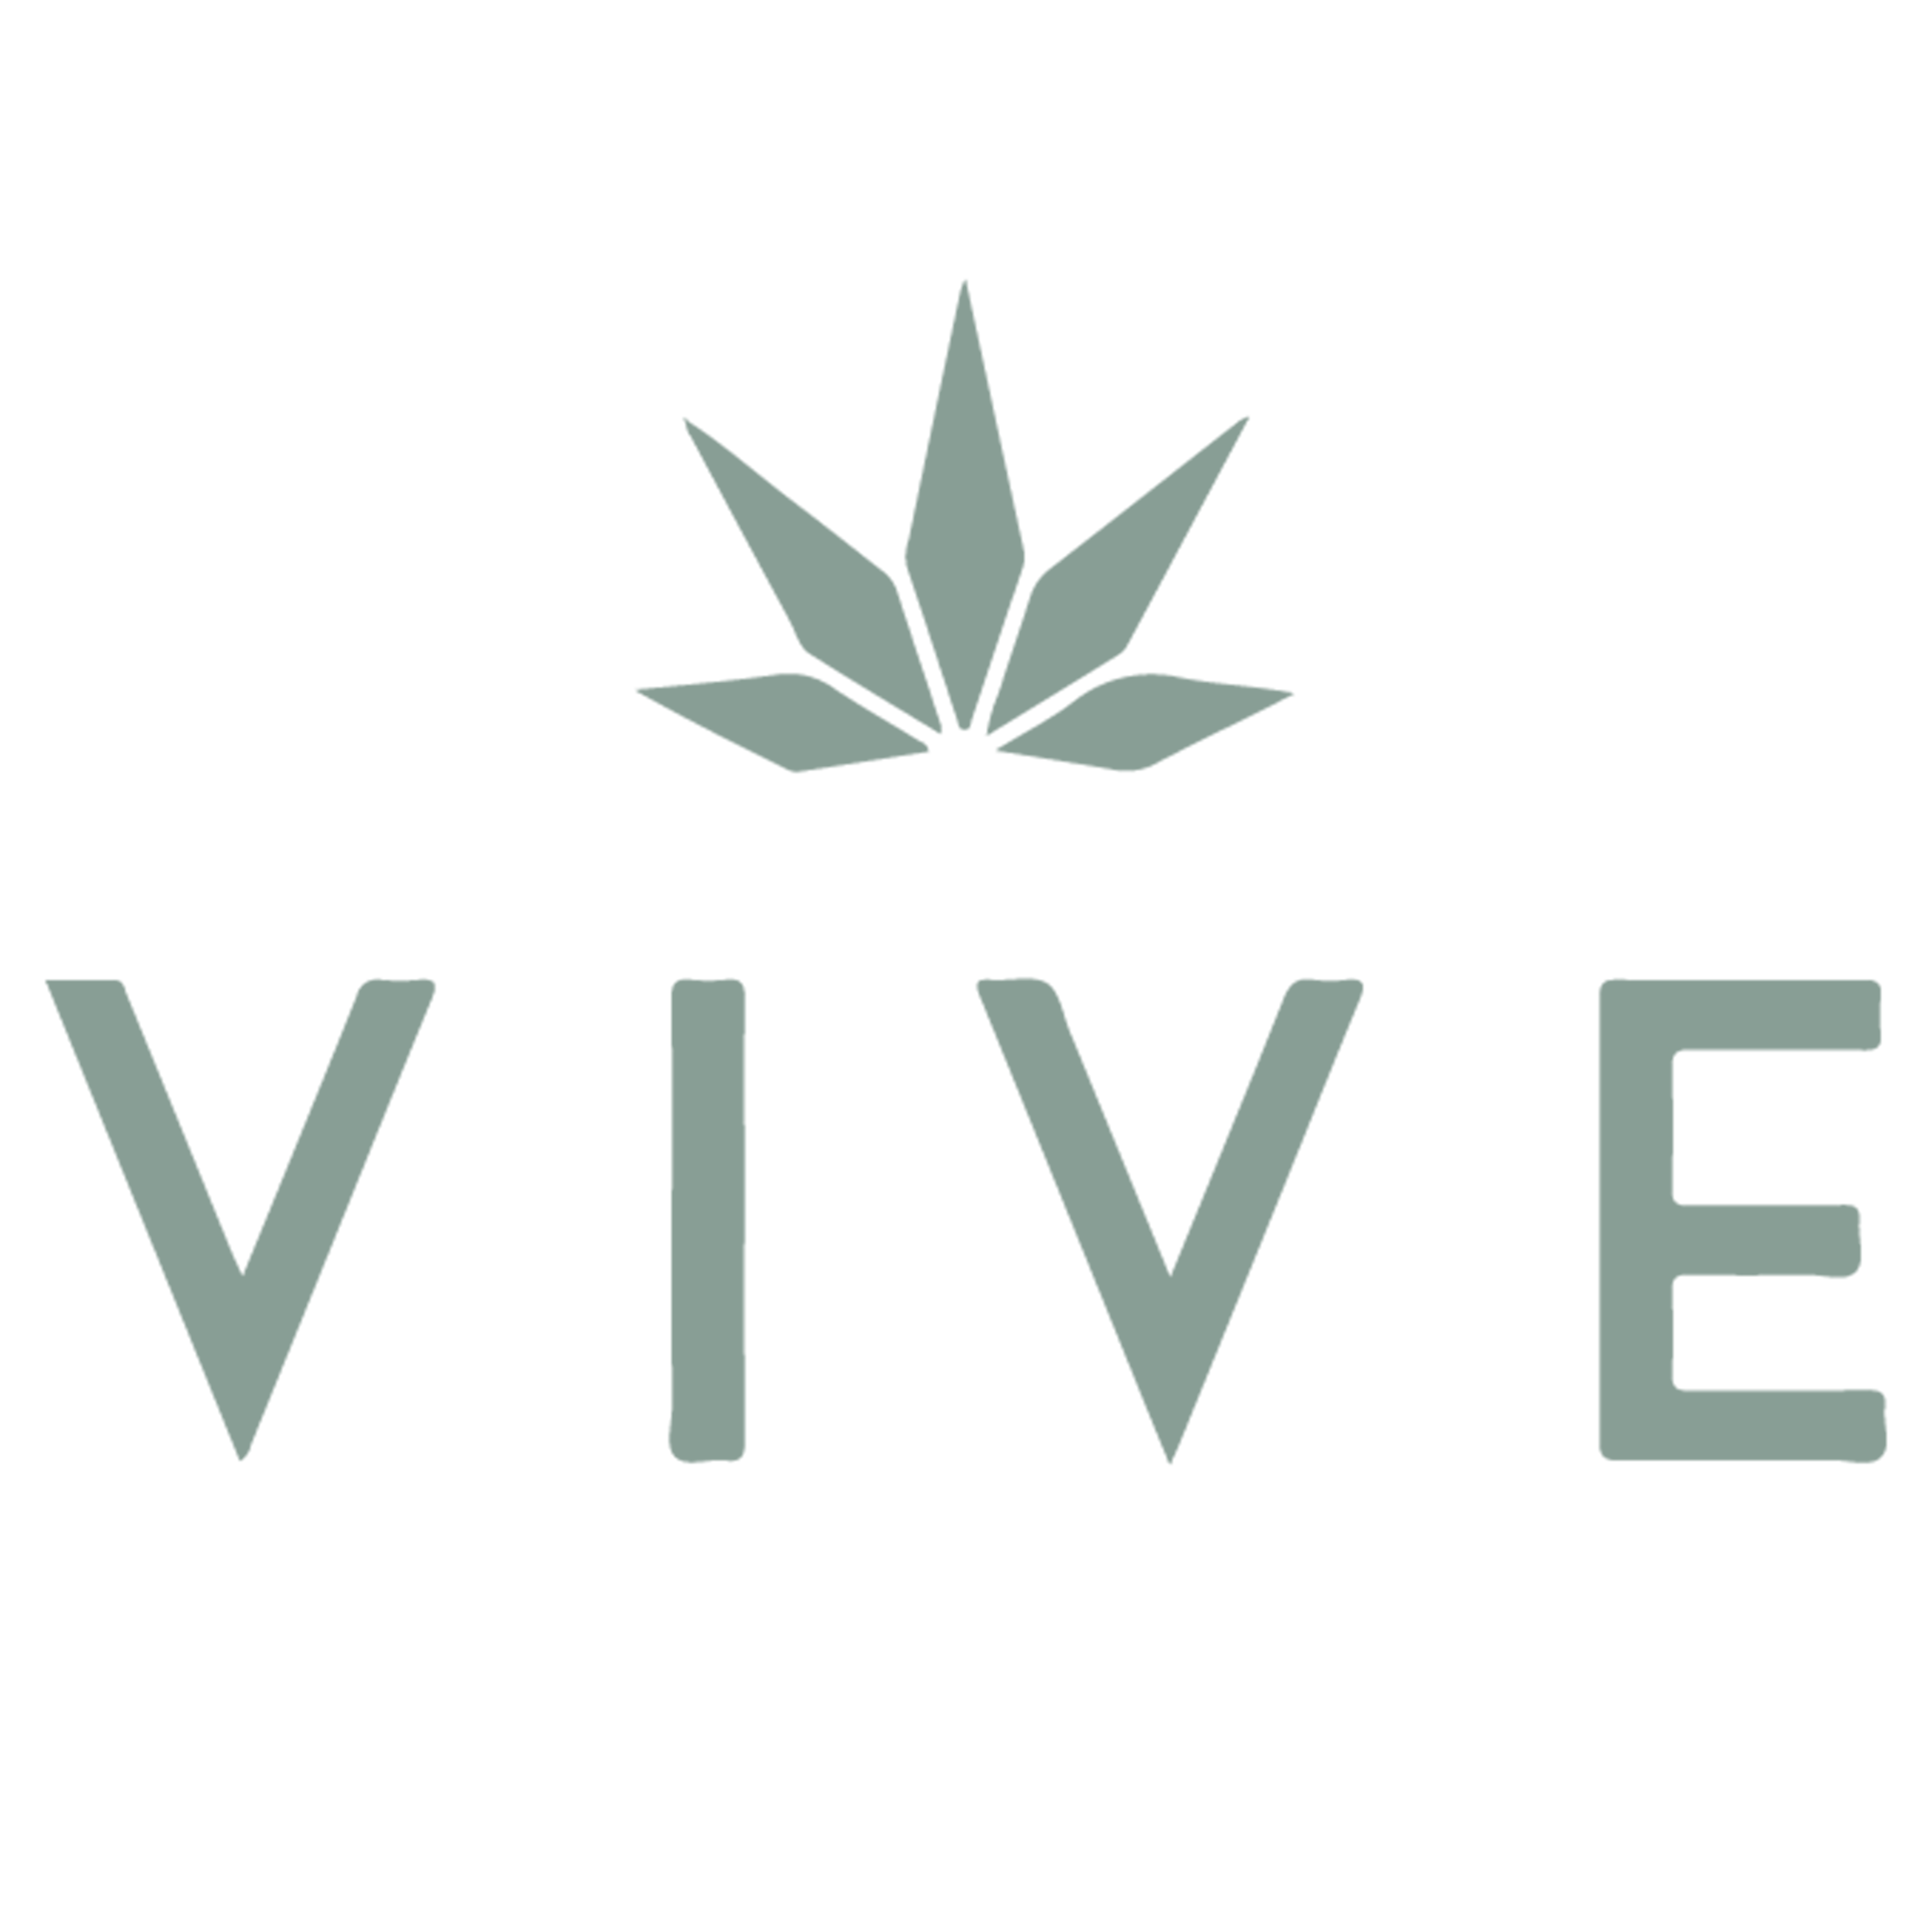 Vive Logo